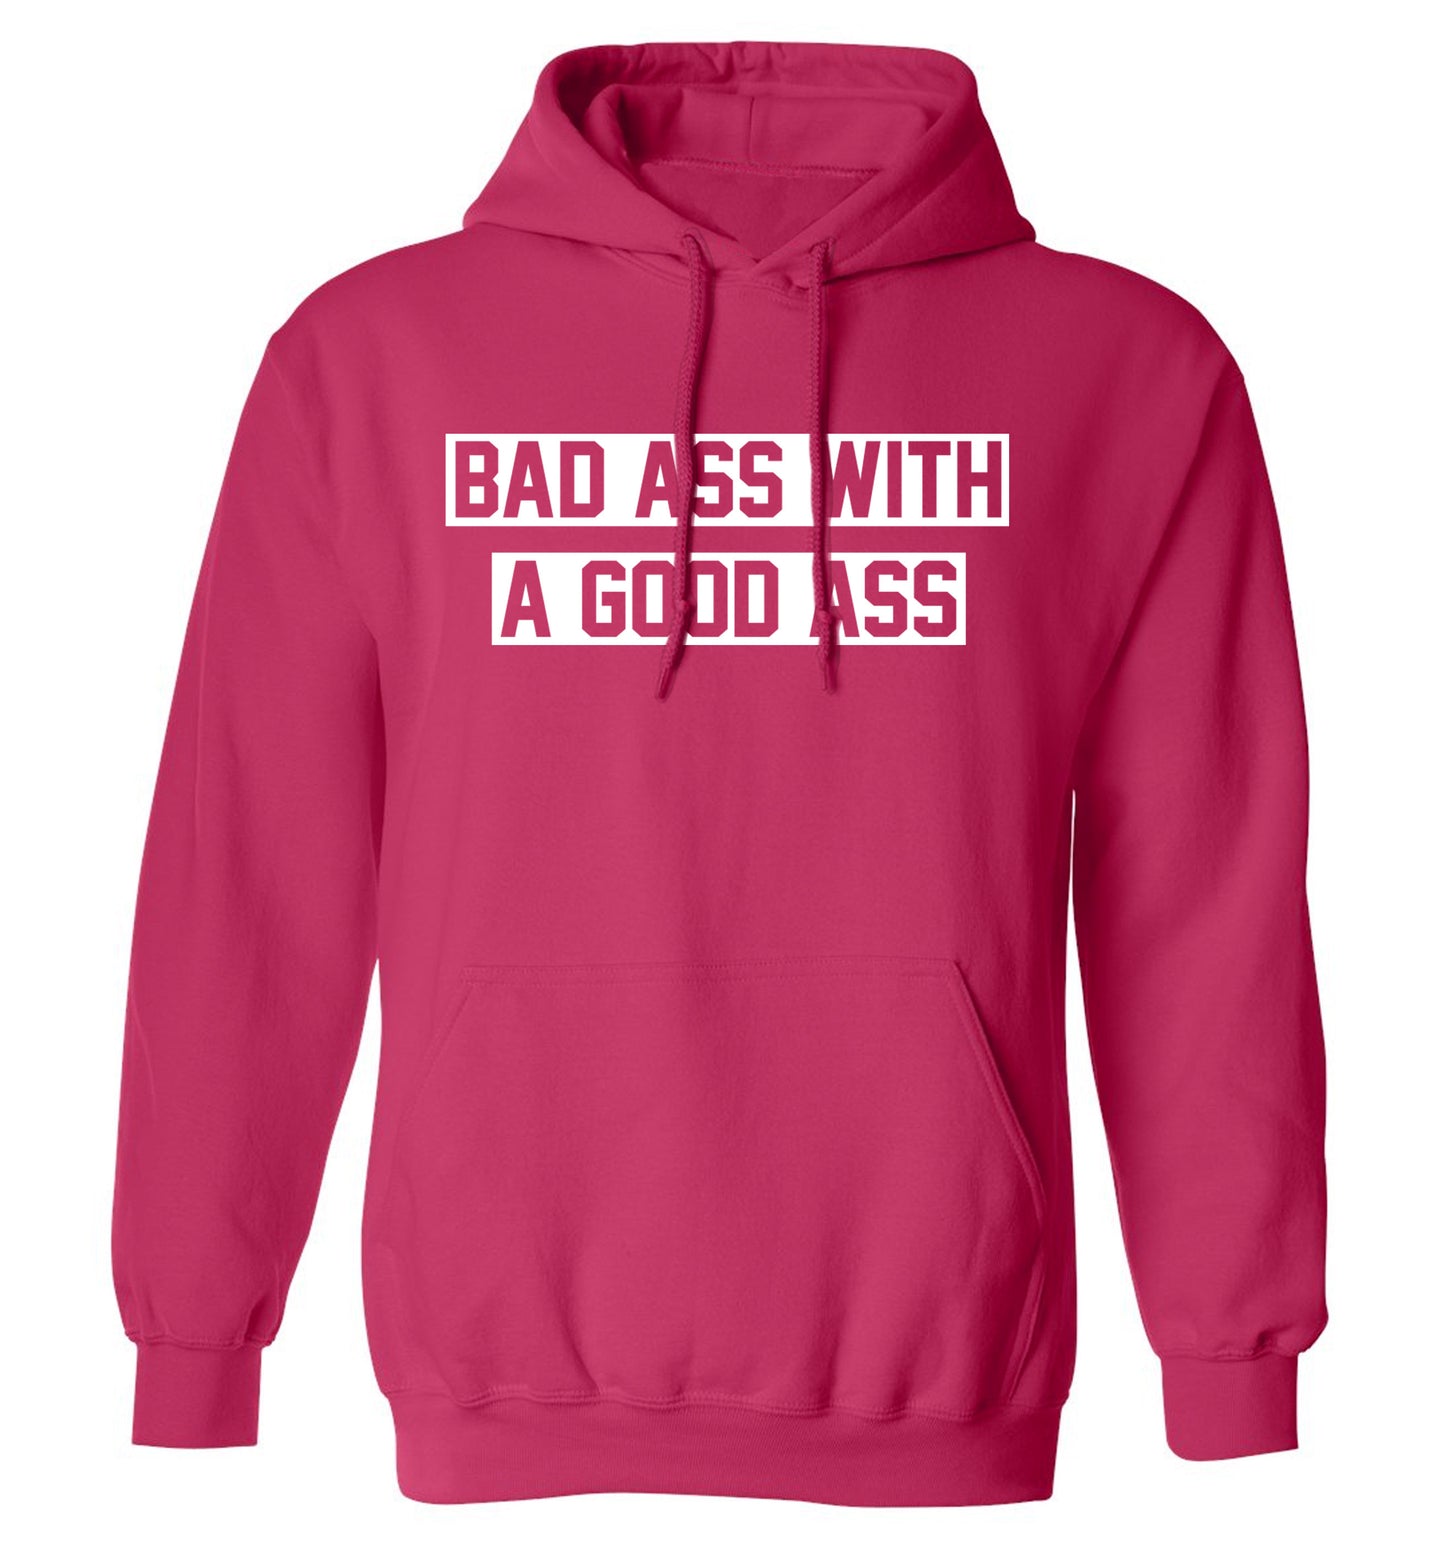 A bad ass with a good ass adults unisex pink hoodie 2XL